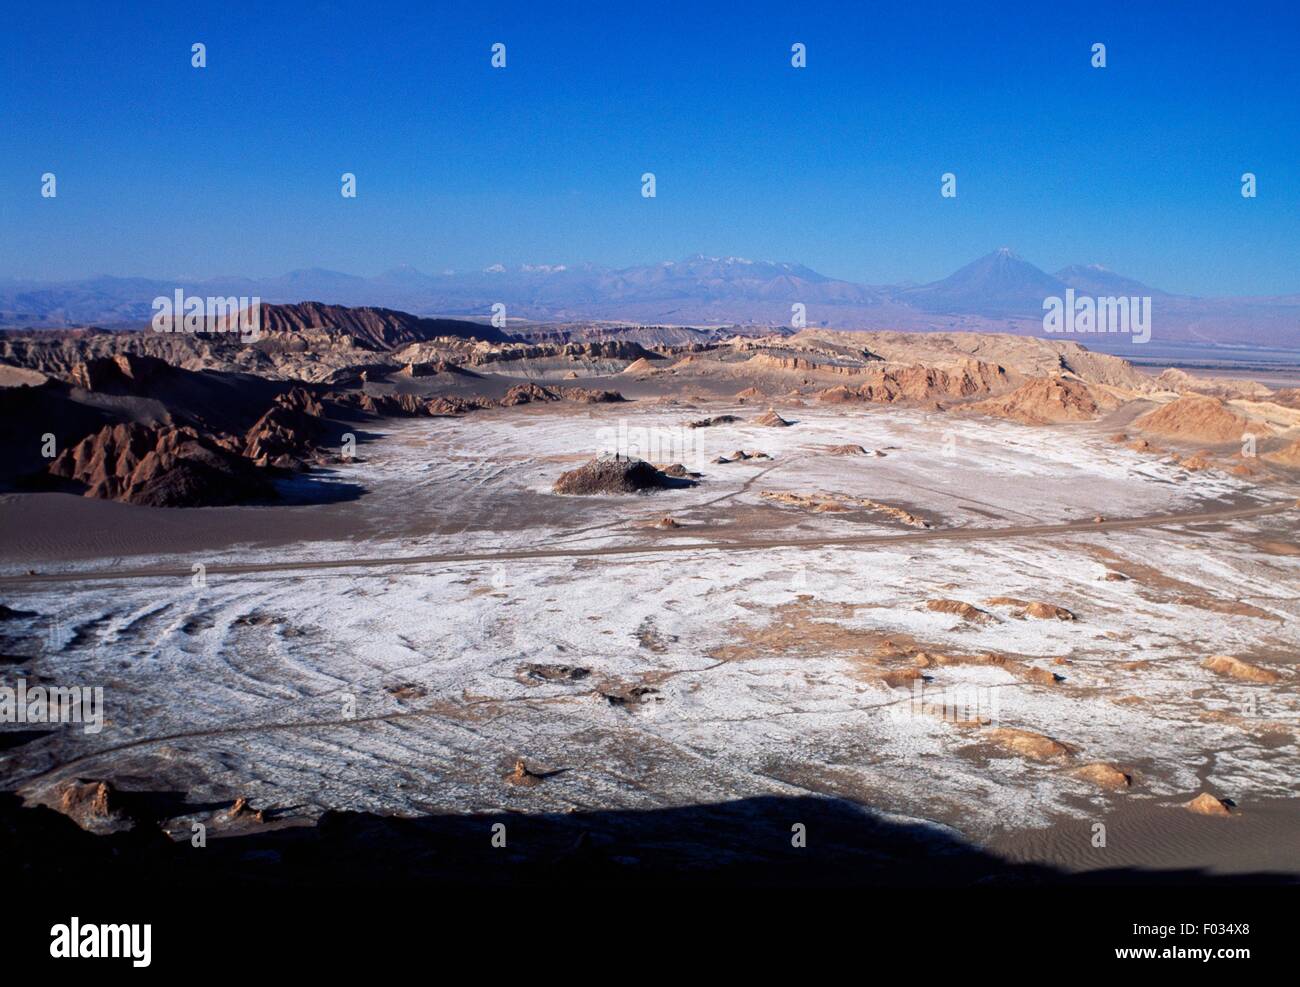 Vallée de la Lune, une dépression dans le désert entouré de collines avec des affleurements salins, Désert d'Atacama, au Chili. Banque D'Images